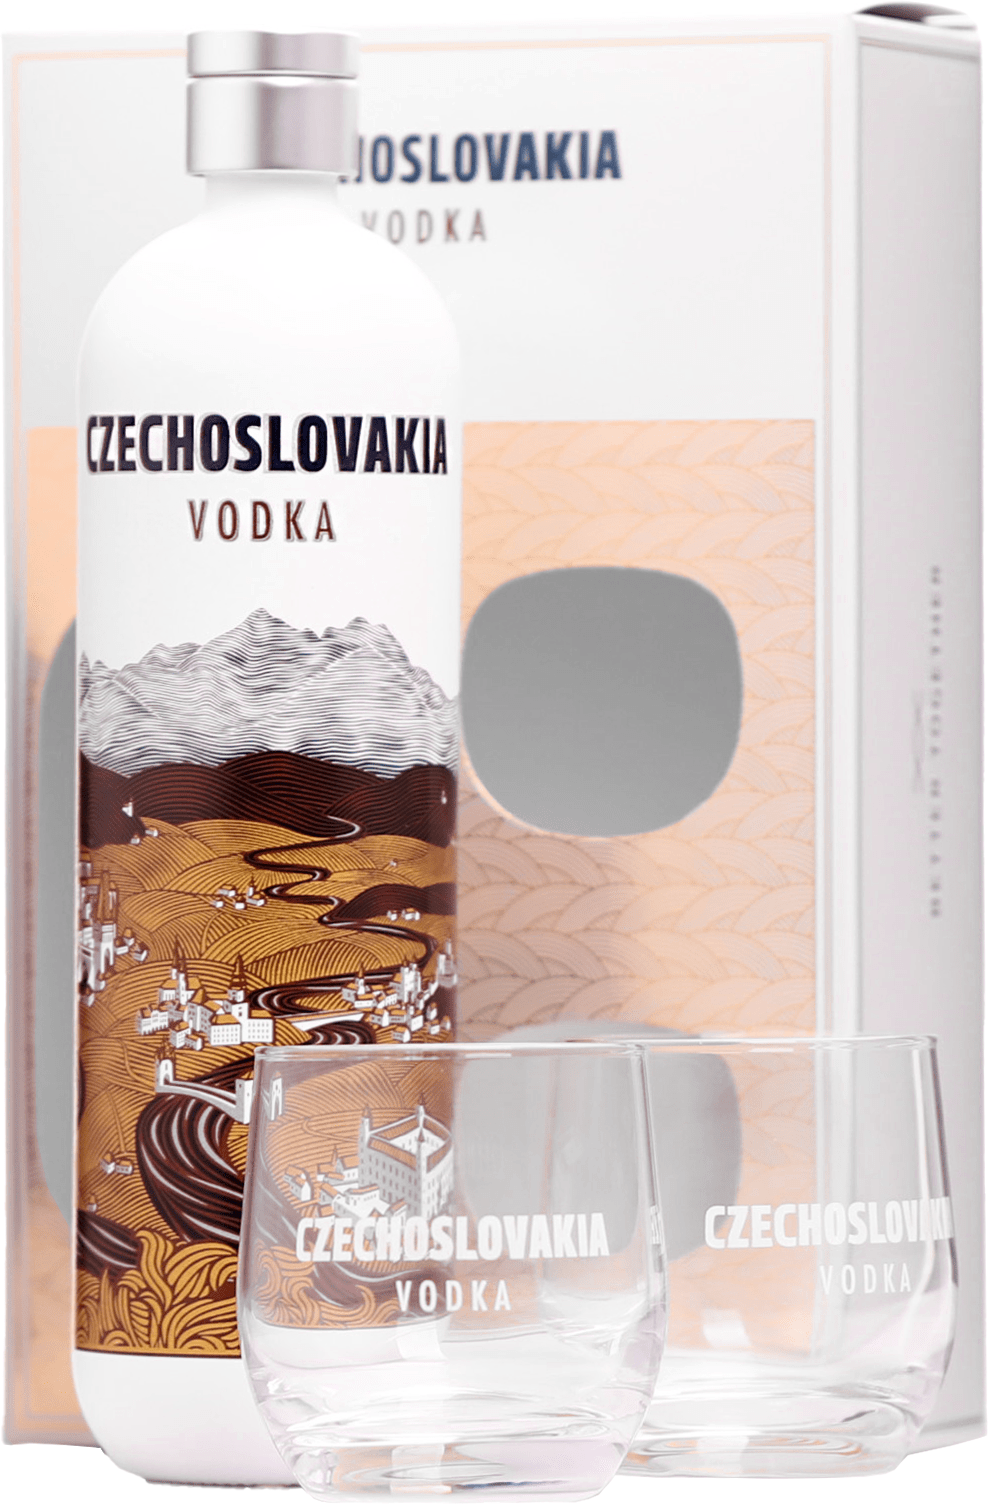 Czechoslovakia Vodka + 2 sklenice 40% 0,7l (darčekové balenie 2 poháre)